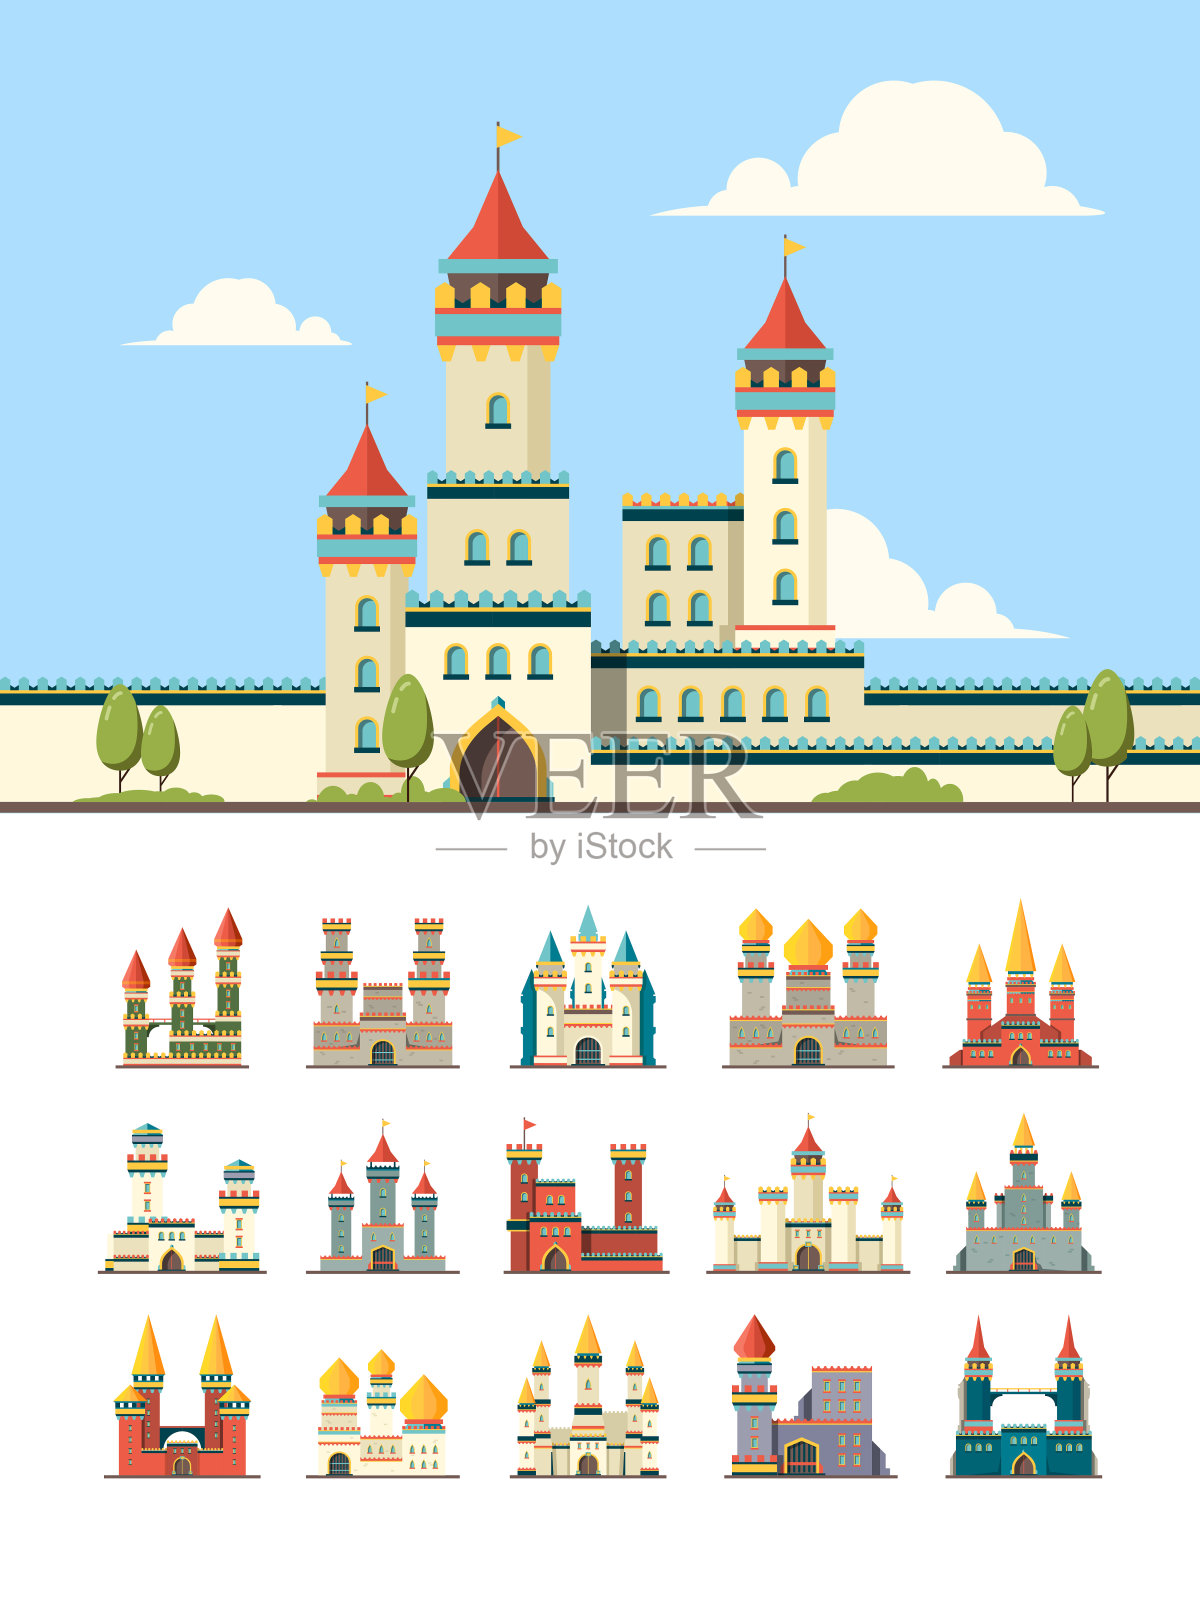 中世纪的城堡。老宫楼、山塔矢量平面插图插画图片素材